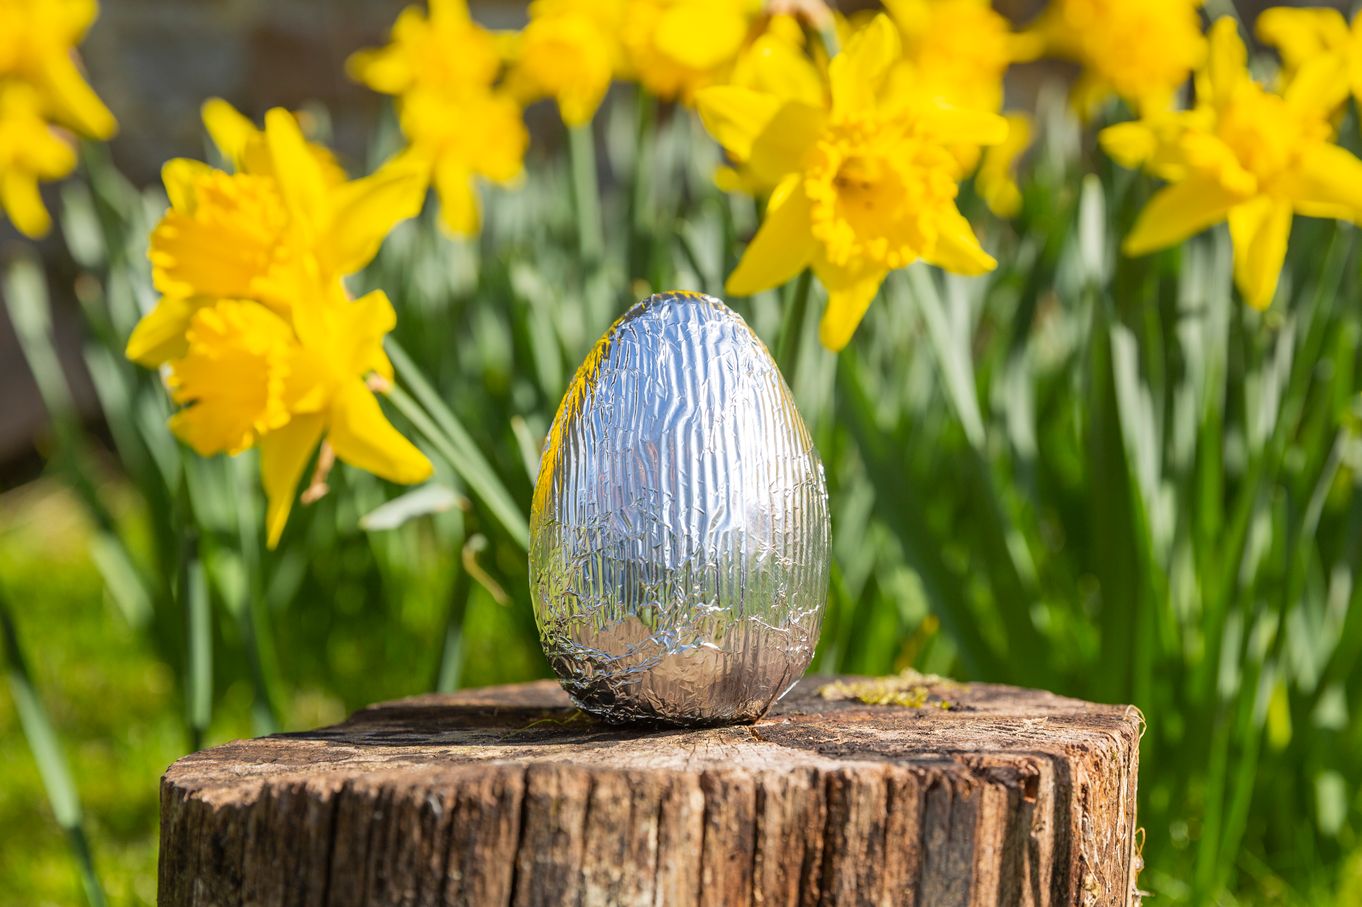 Easter egg among the daffodils